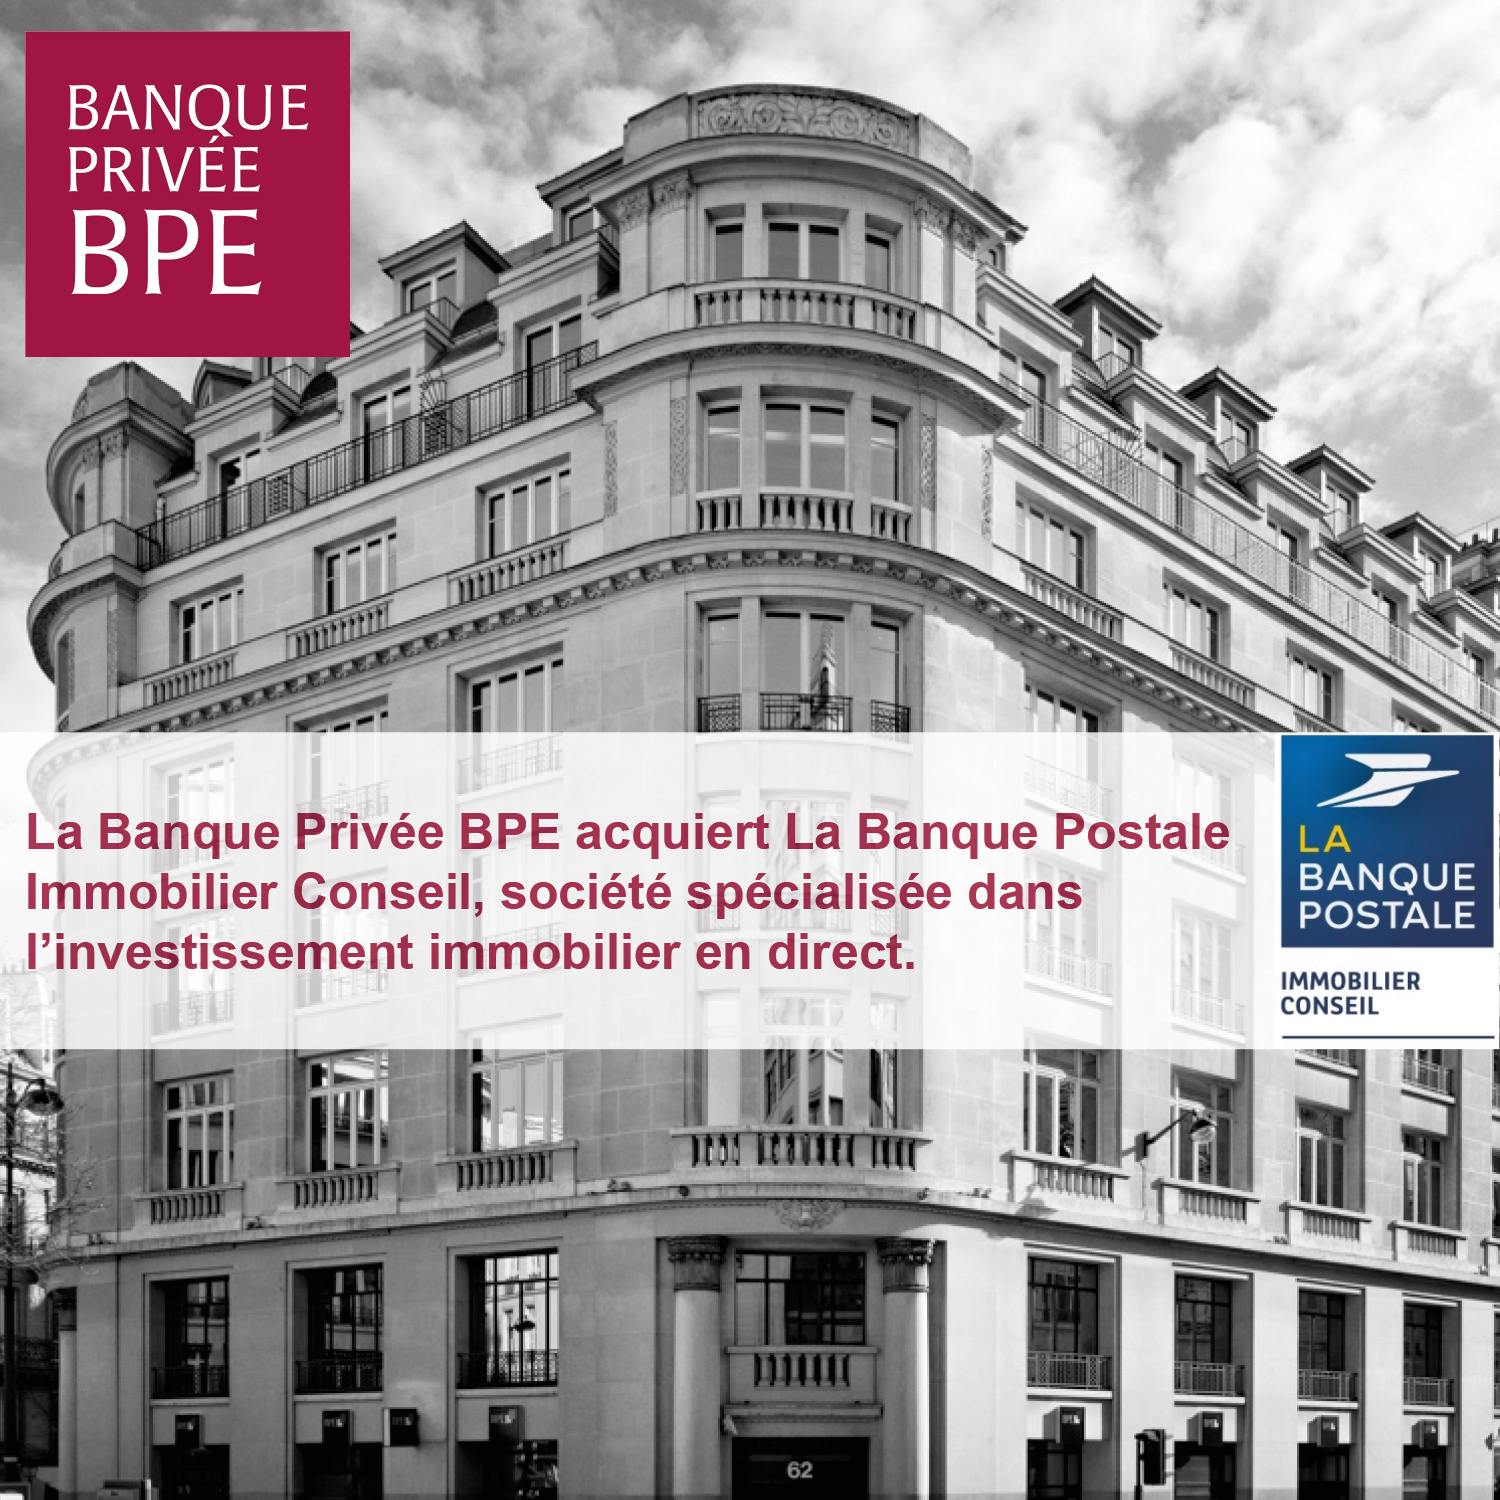 BPE acquiert La Banque Postale Immobilier Conseil